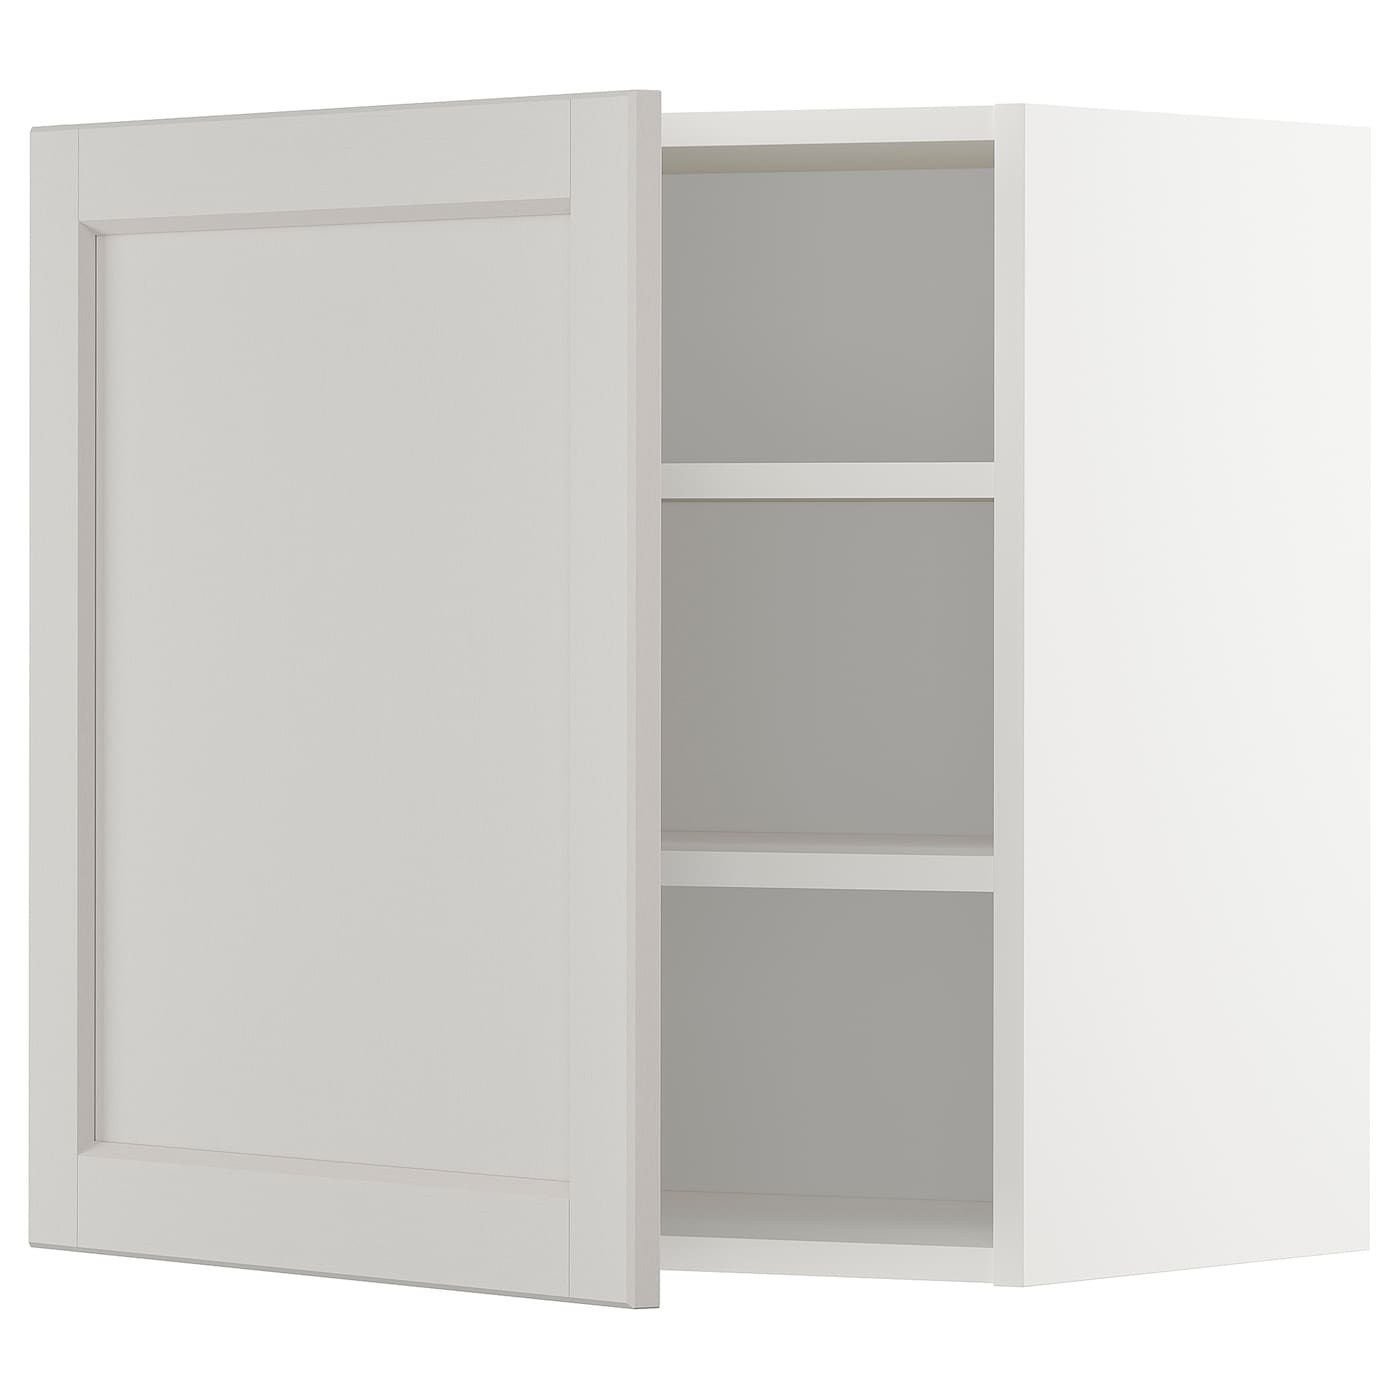 Навесной шкаф с полкой - METOD IKEA/ МЕТОД ИКЕА, 60х60 см, белый/светло-серый